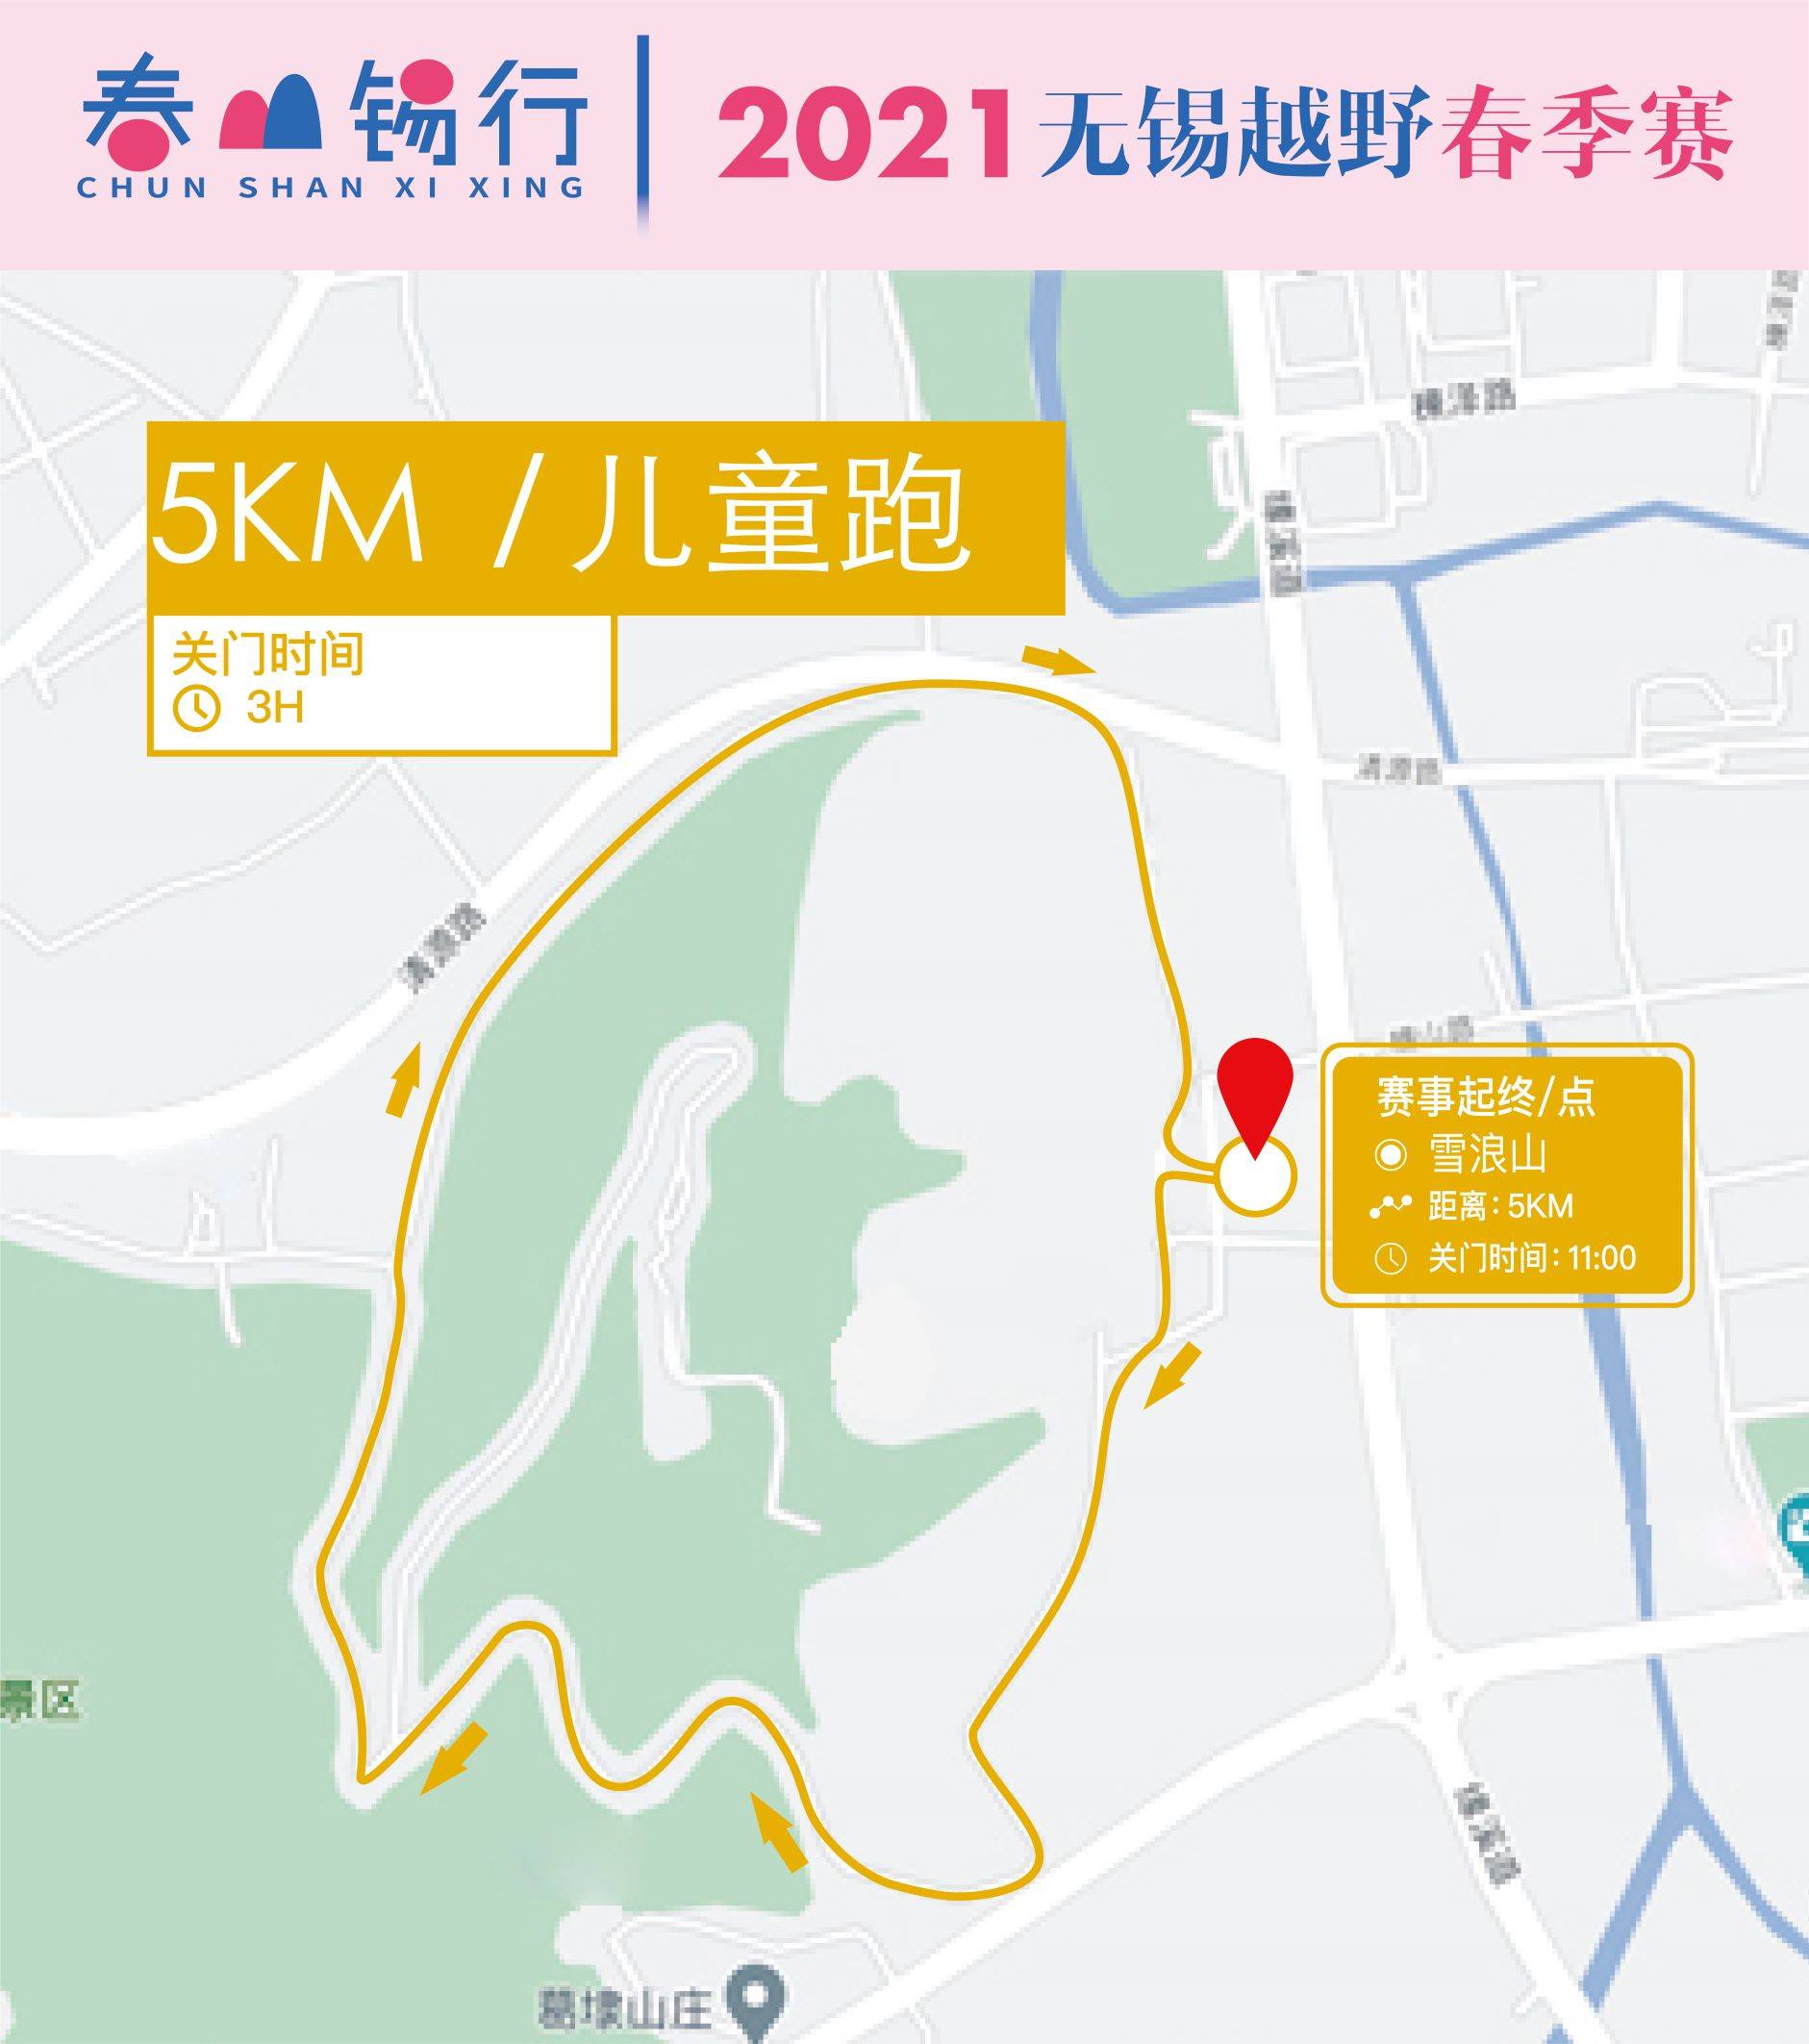 5km赛道图.jpg